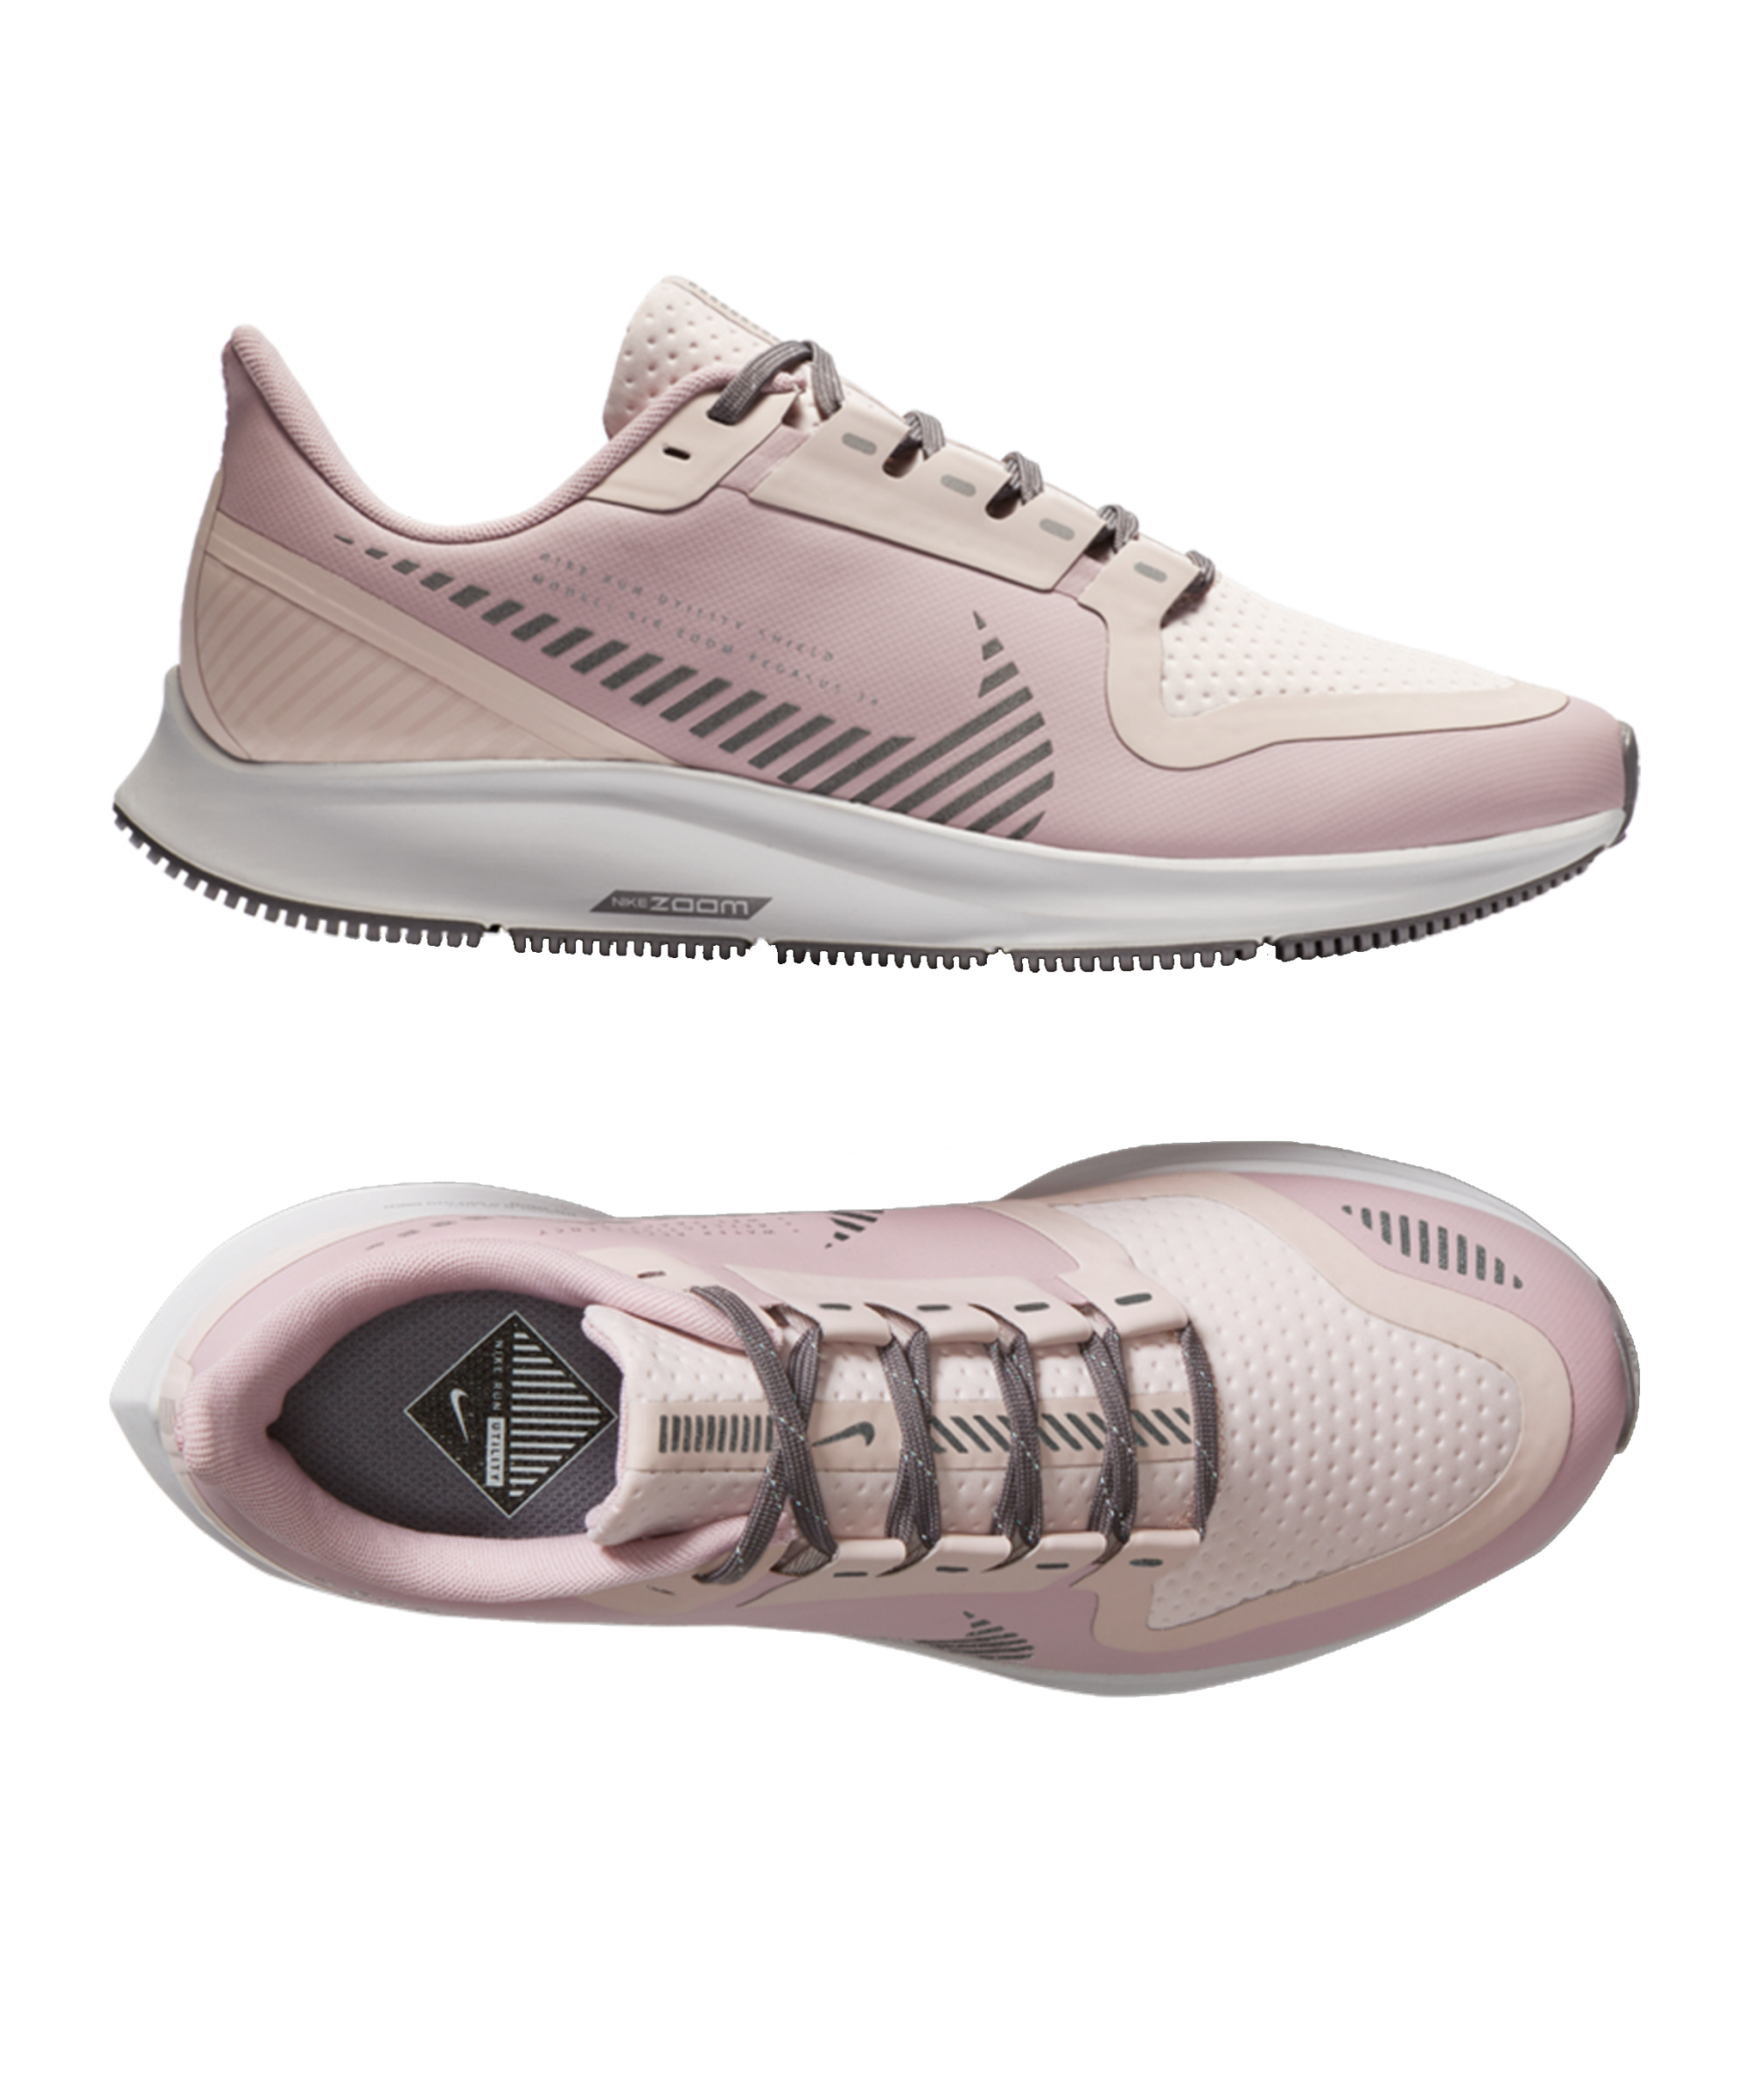 Nike Air Pegasus Shield - light pink